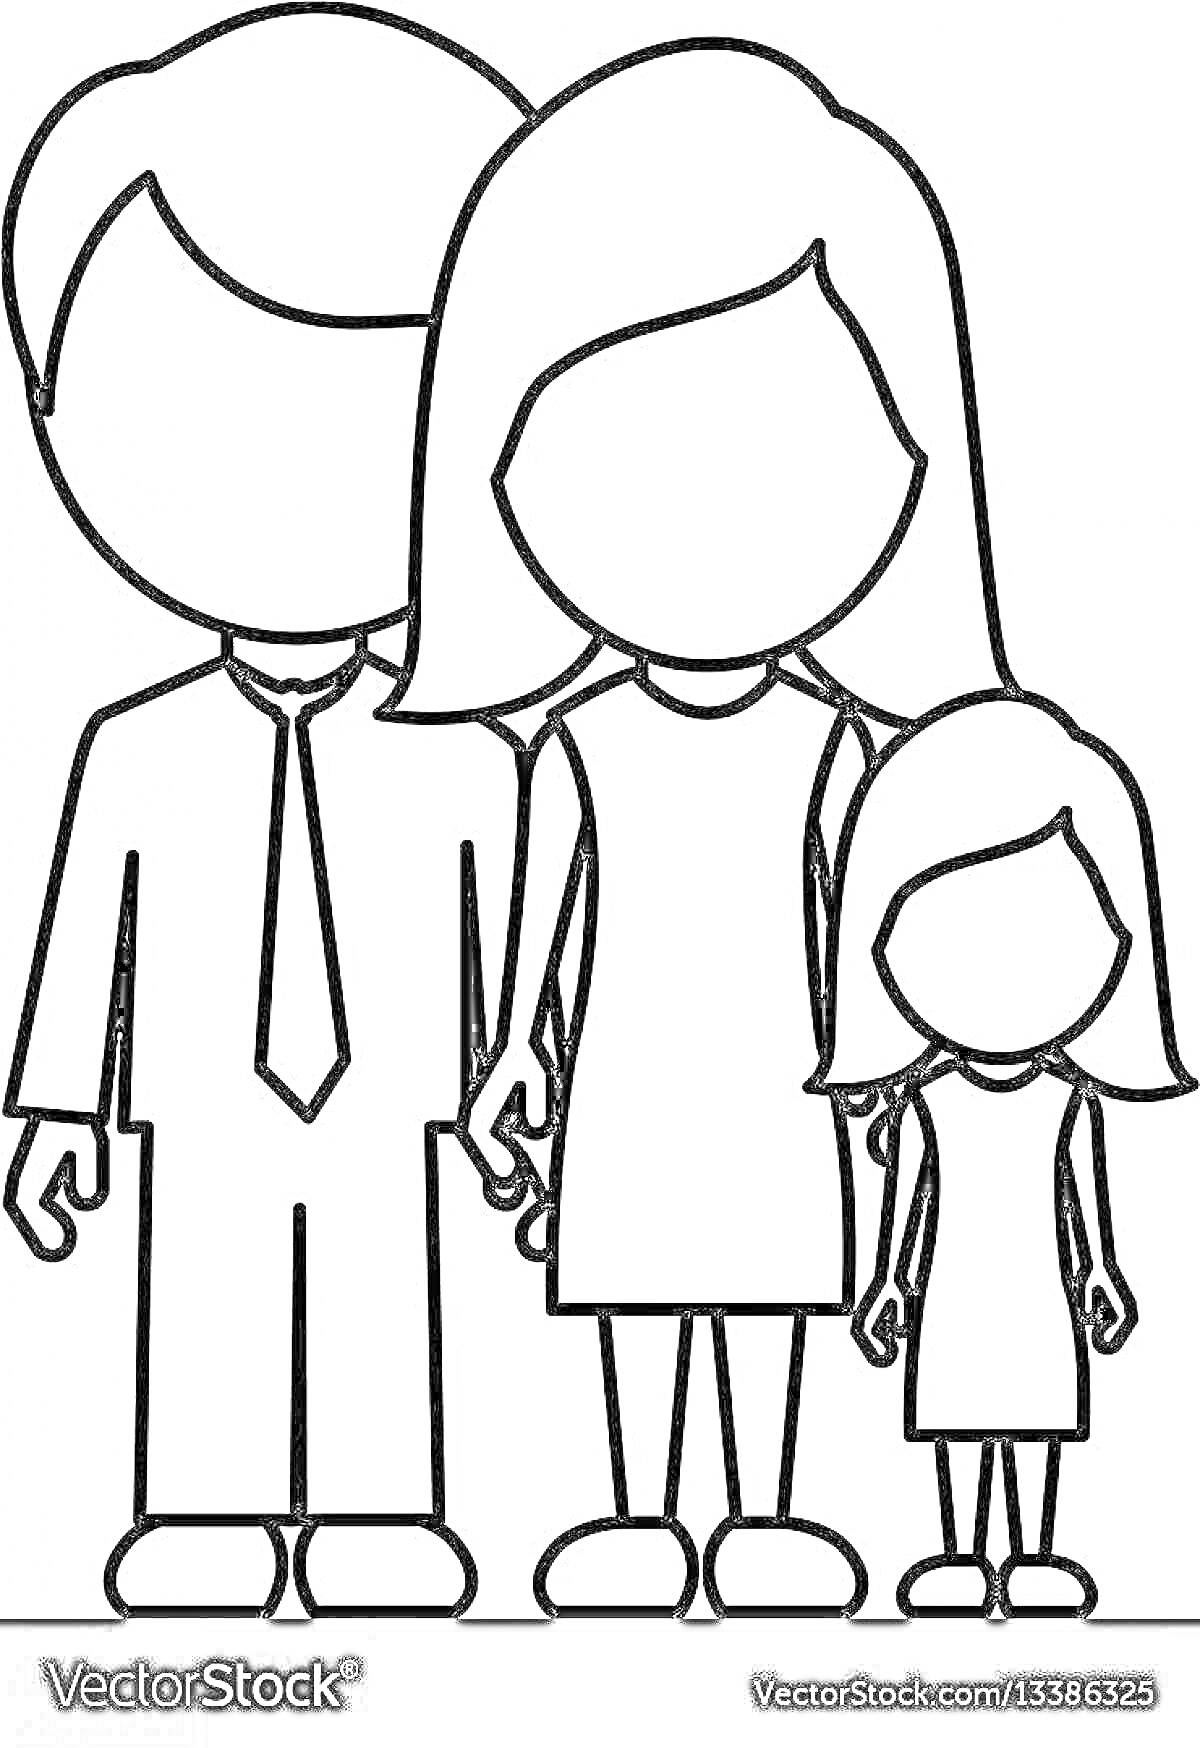 Раскраска Чёрно-белая раскраска с изображением папы, мамы и дочери, держащихся за руки